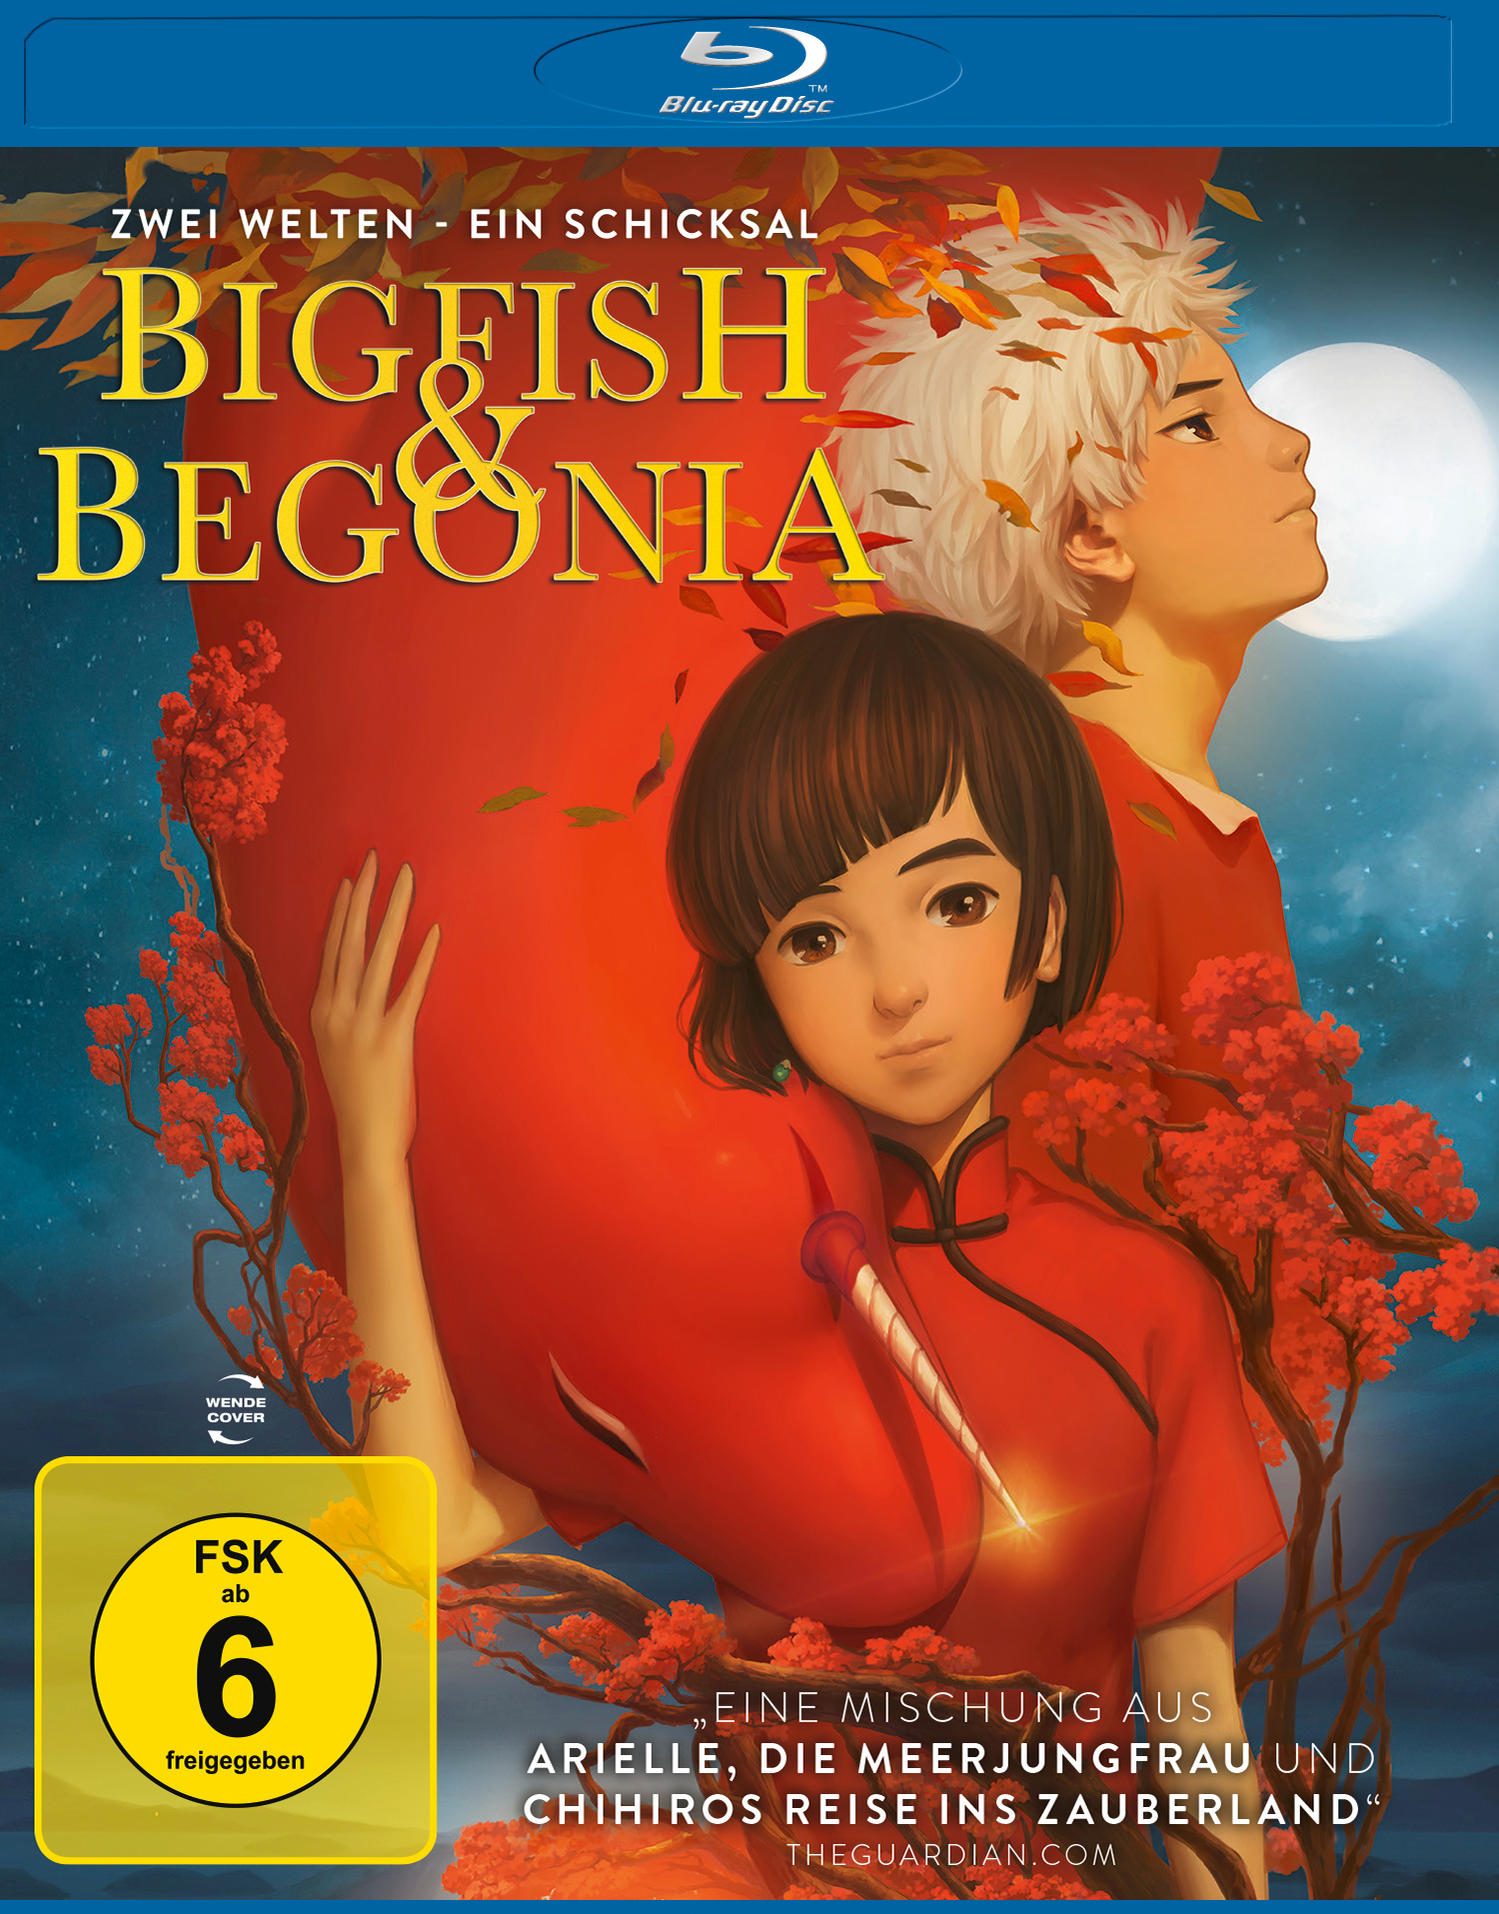 Big Fish & Begonia - Schicksal Blu-ray Ein Welten - Zwei